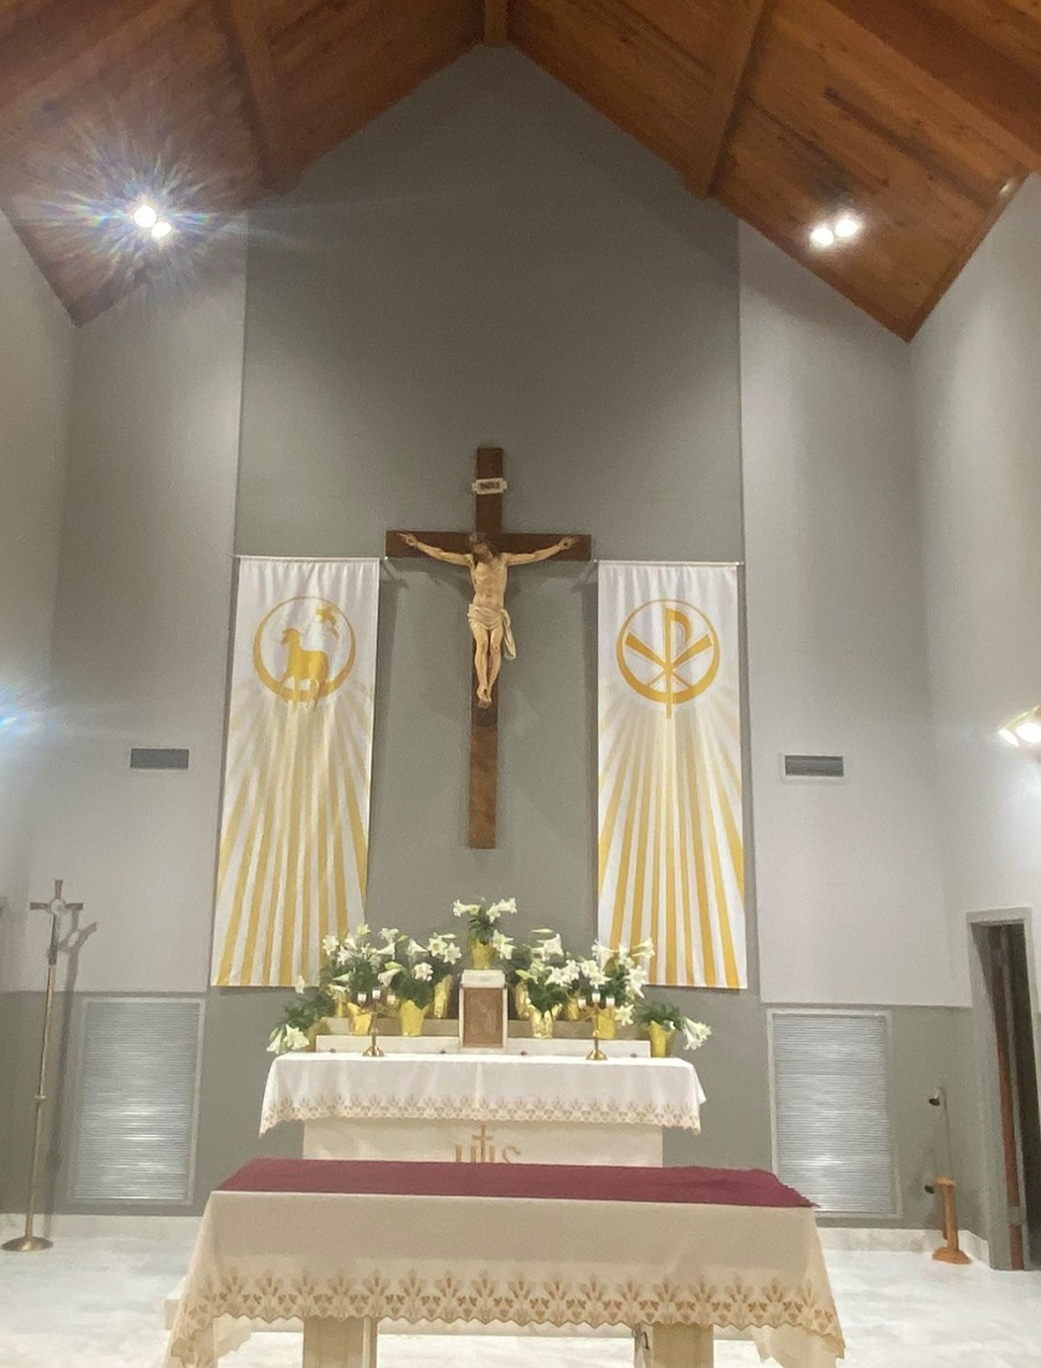 St Joseph Parish – Central Apse Repaint After